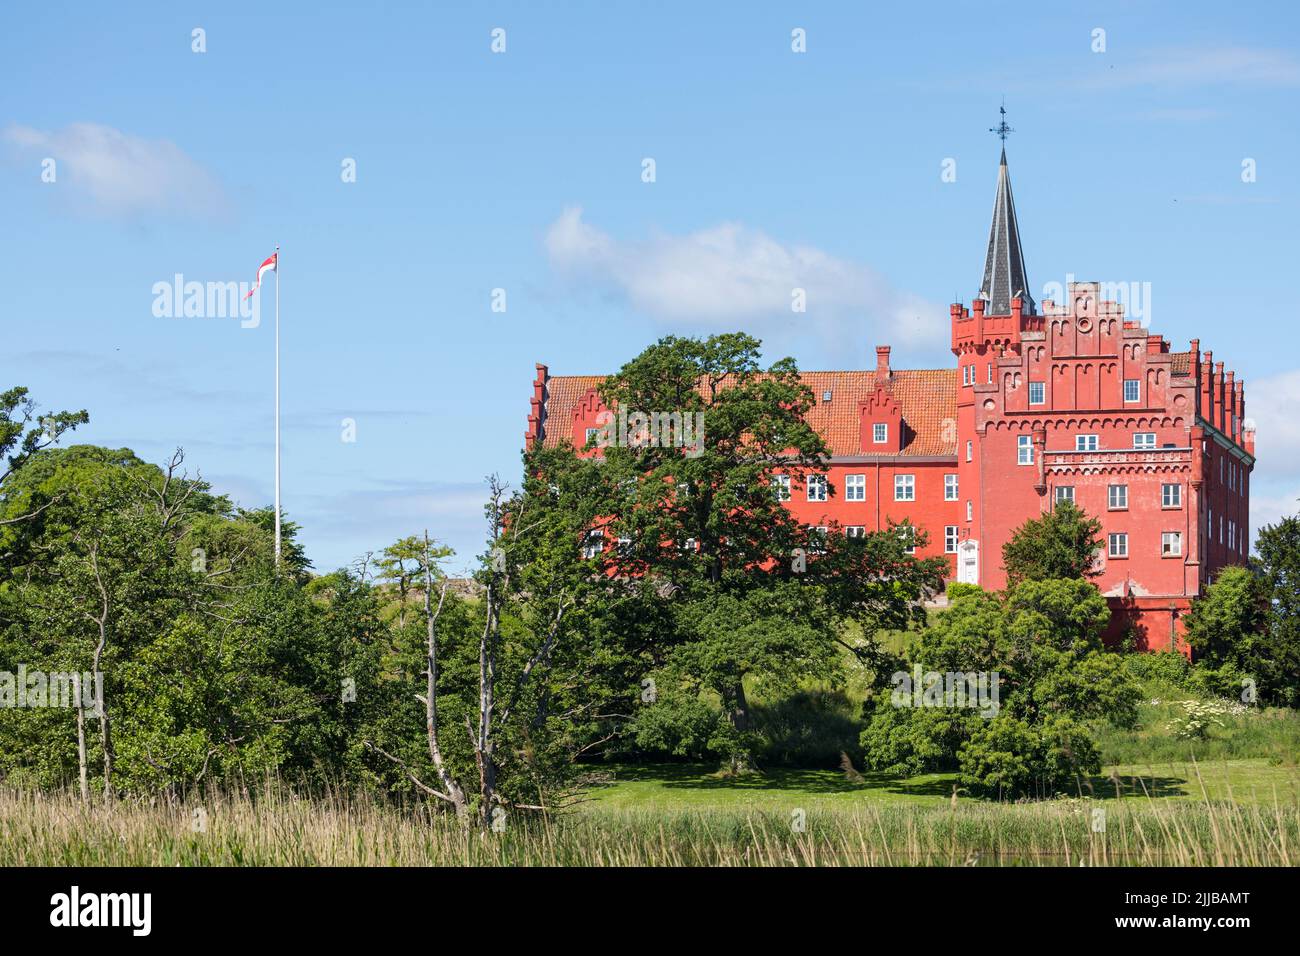 Castillo del siglo 13th en Tranekær, isla de Langeland, Dinamarca Foto de stock